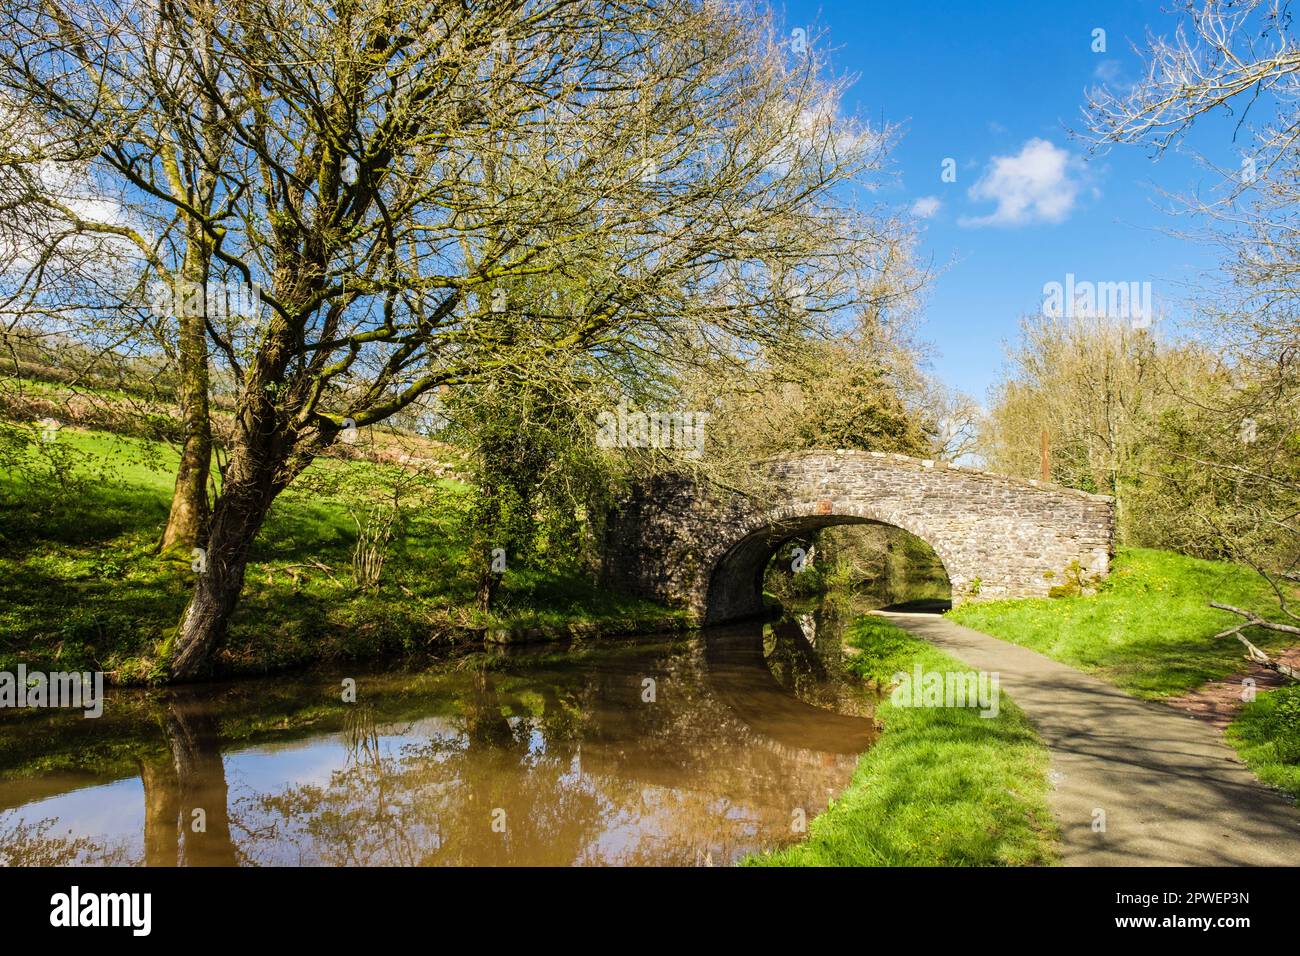 Vieux pont en pierre 151 sur le Monbucshire et le canal Brecon dans le parc national de Brecon Beacons. Pencelli, Brecon (Aberhonddu), Powys, pays de Galles, Royaume-Uni, Grande-Bretagne Banque D'Images